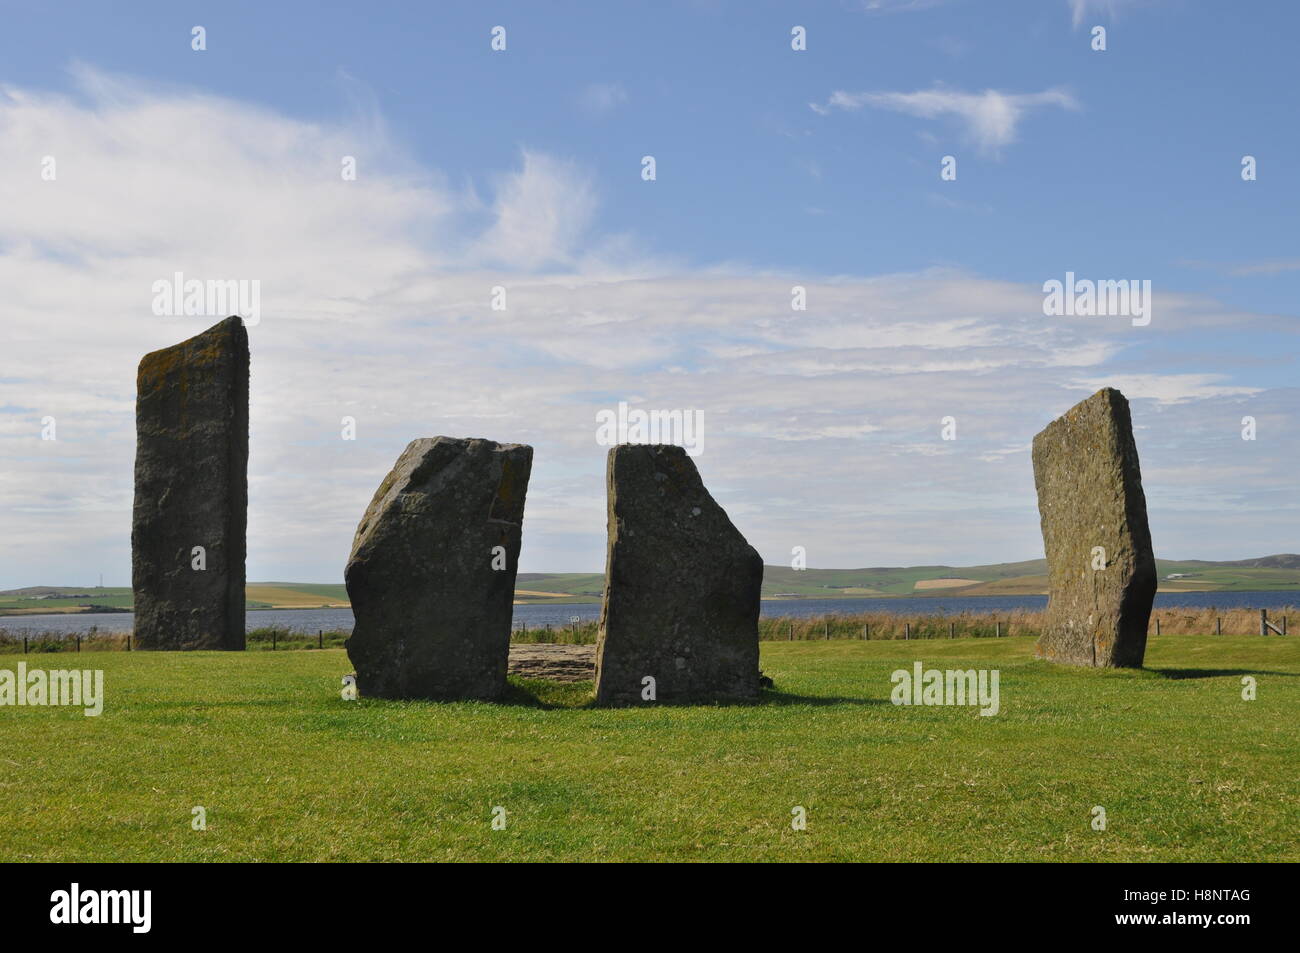 Pierres debout de Stenness, Orkney Mainland, un monument mégalithique qui fait partie du « coeur de l'Orkney néolithique », site classé au patrimoine mondial de l'UNESCO Banque D'Images